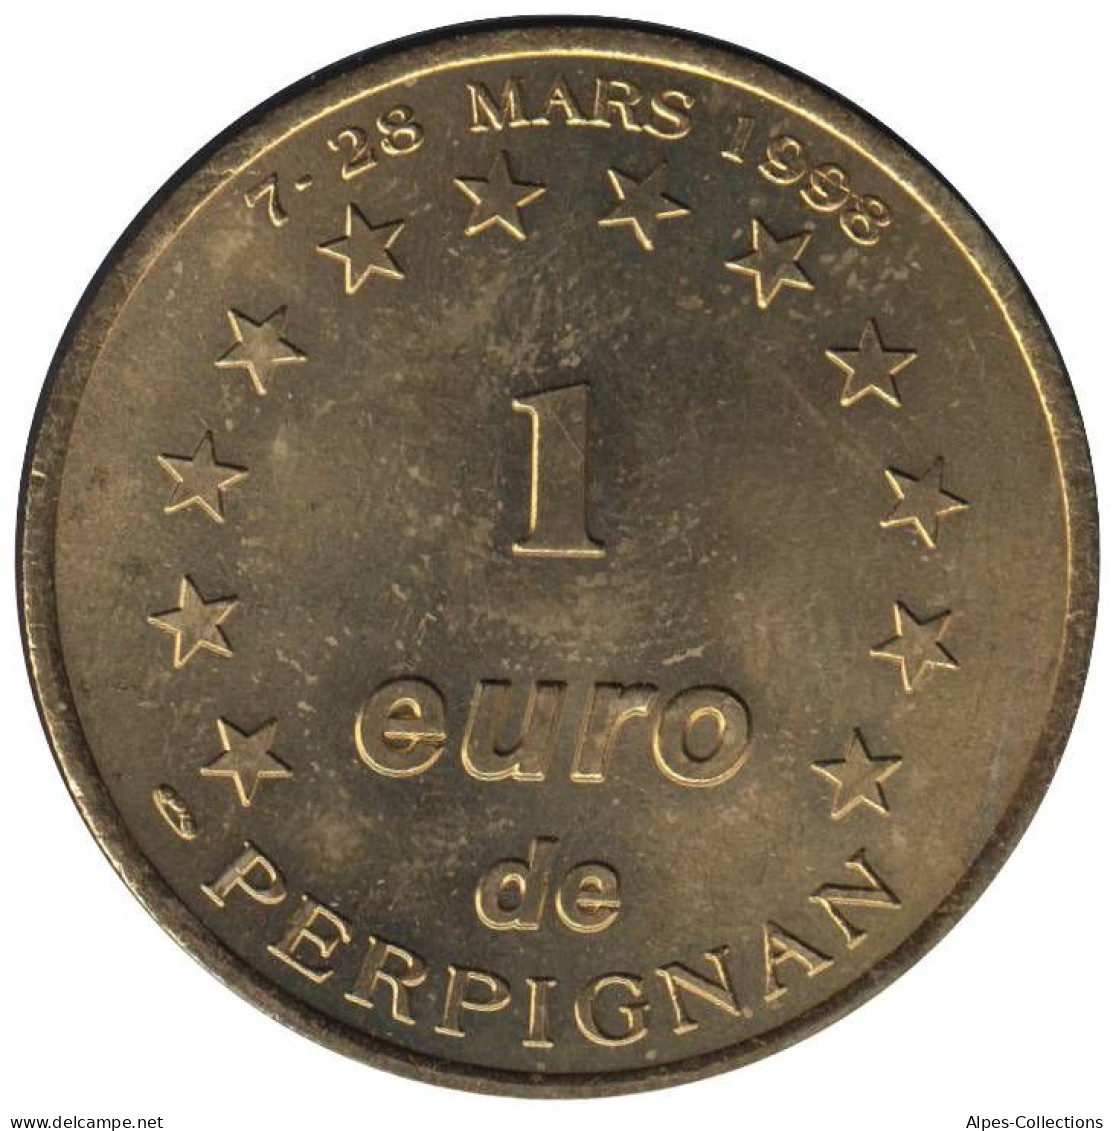 PERPIGNAN - EU0010.1 - 1 EURO DES VILLES - Réf: T538 - 1998 - Euro Delle Città